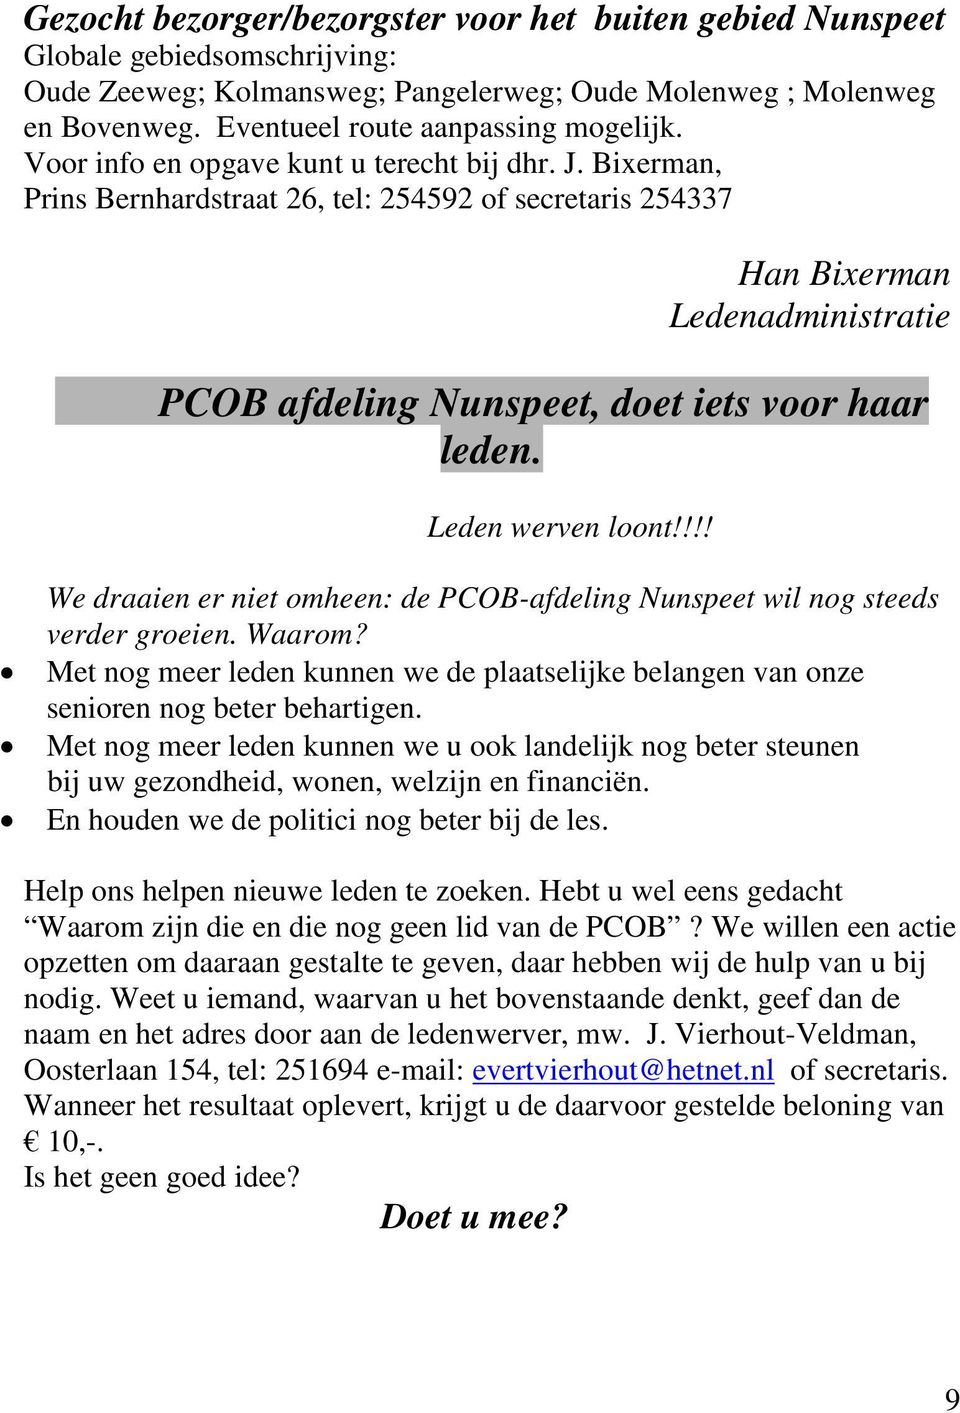 Bixerman, Prins Bernhardstraat 26, tel: 254592 of secretaris 254337 Han Bixerman Ledenadministratie PCOB afdeling Nunspeet, doet iets voor haar leden. Leden werven loont!